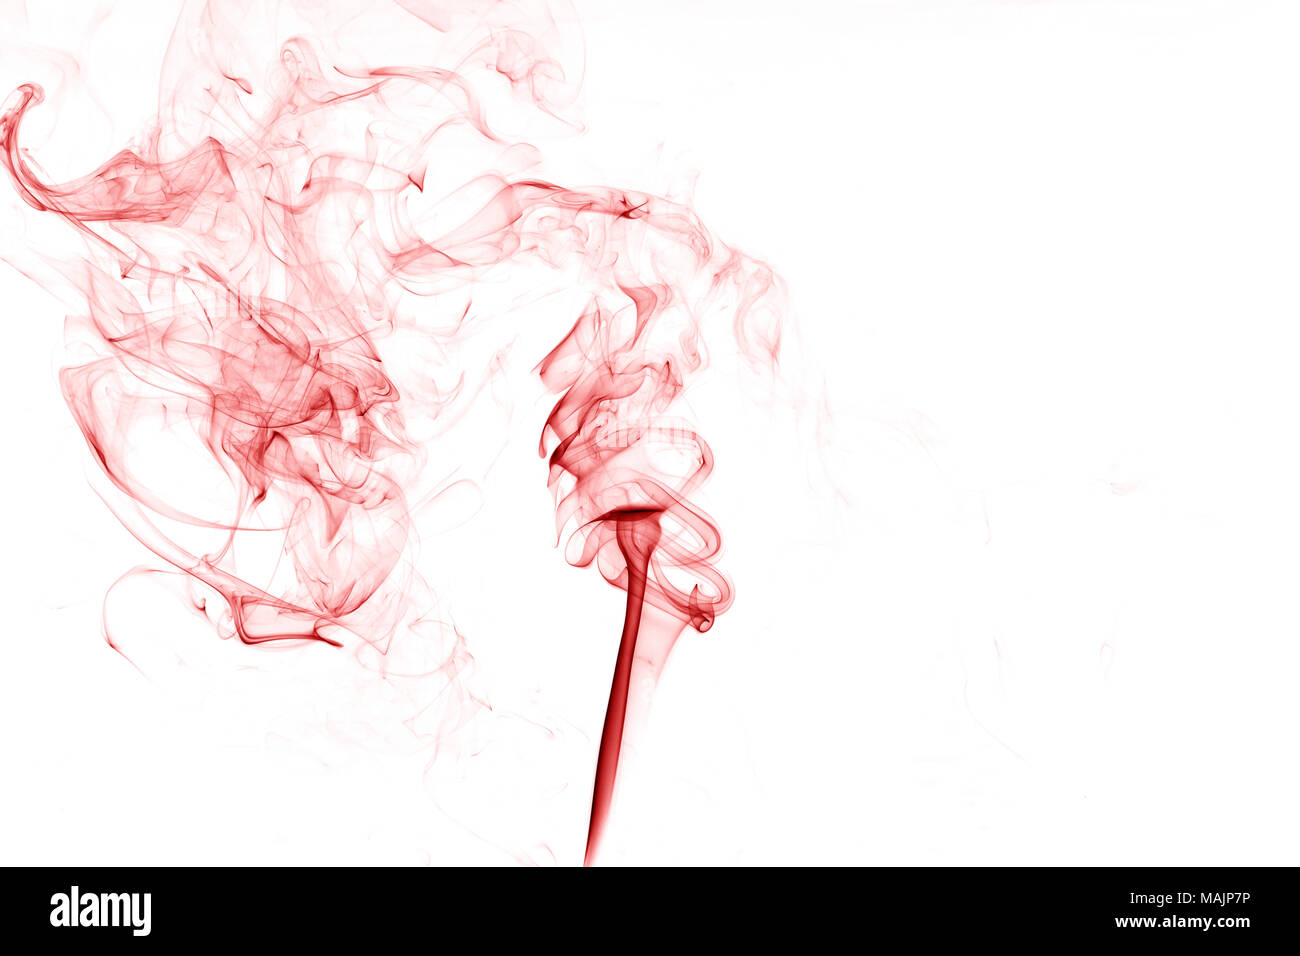 La fumée rouge sur fond blanc,rouge abstrait tourbillons de fumée sur fond blanc, fumée de feu,de l'encre rouge,le mouvement de la fumée rouge Banque D'Images